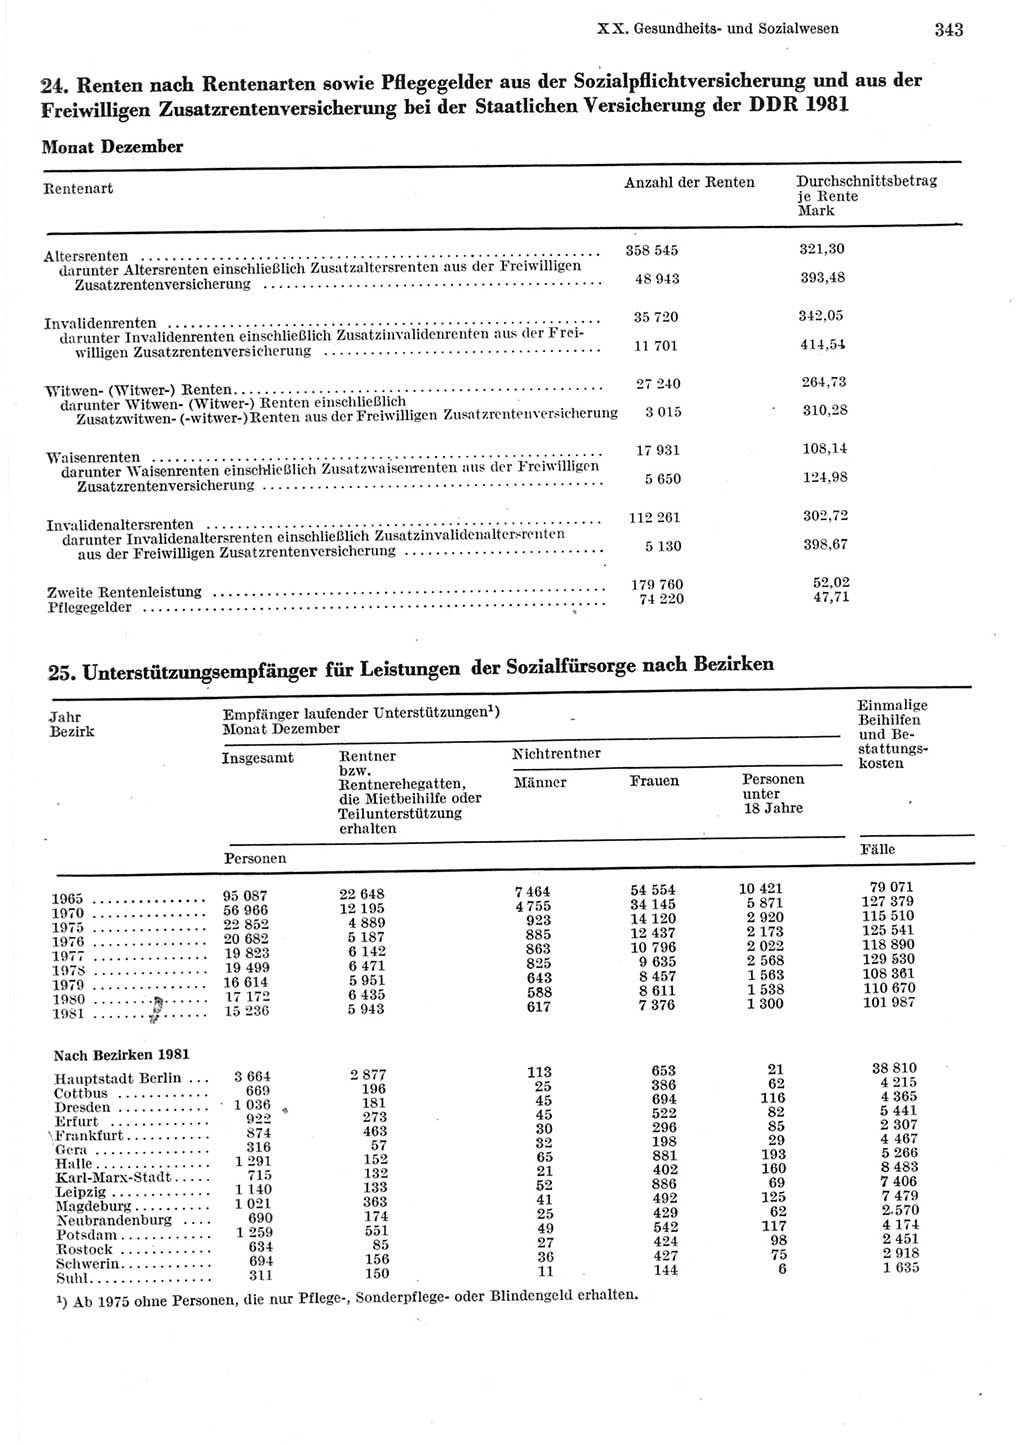 Statistisches Jahrbuch der Deutschen Demokratischen Republik (DDR) 1982, Seite 343 (Stat. Jb. DDR 1982, S. 343)